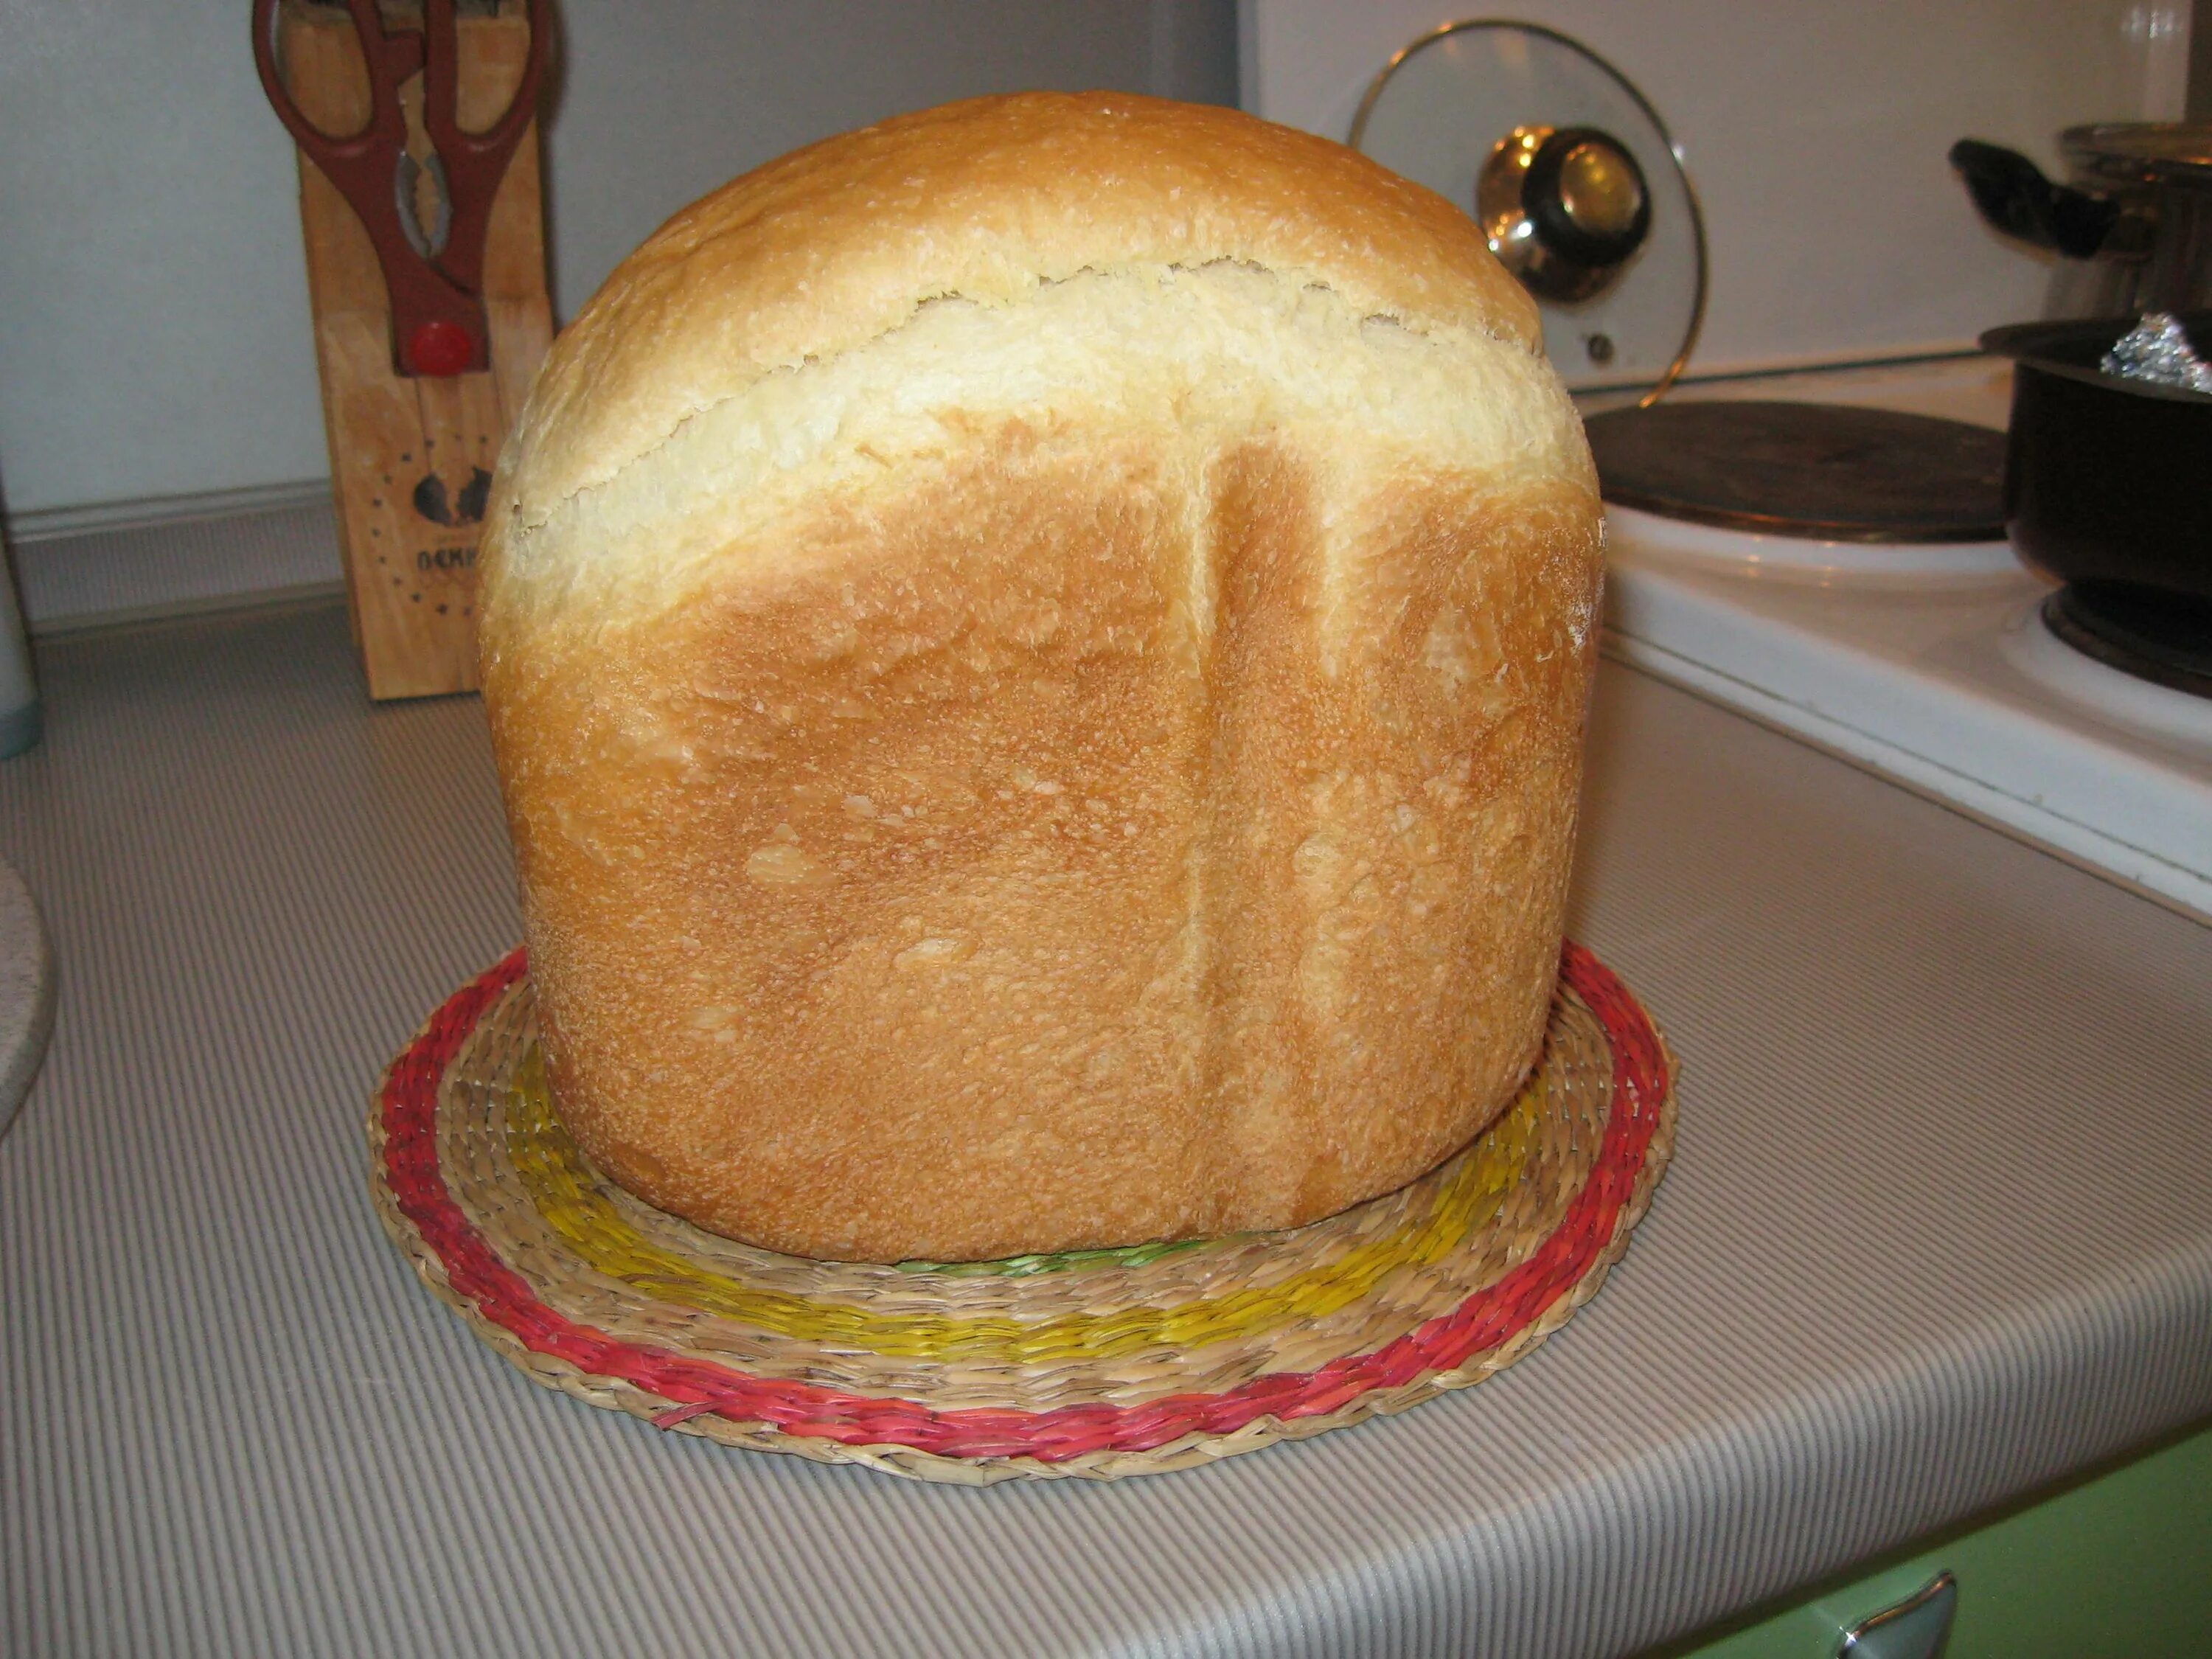 Видео печь хлеб. Домашний хлеб из хлебопечки. Домашний хлеб в хлебопечке. Хлебопечка с хлебом. Деревенский хлеб в хлебопечке.